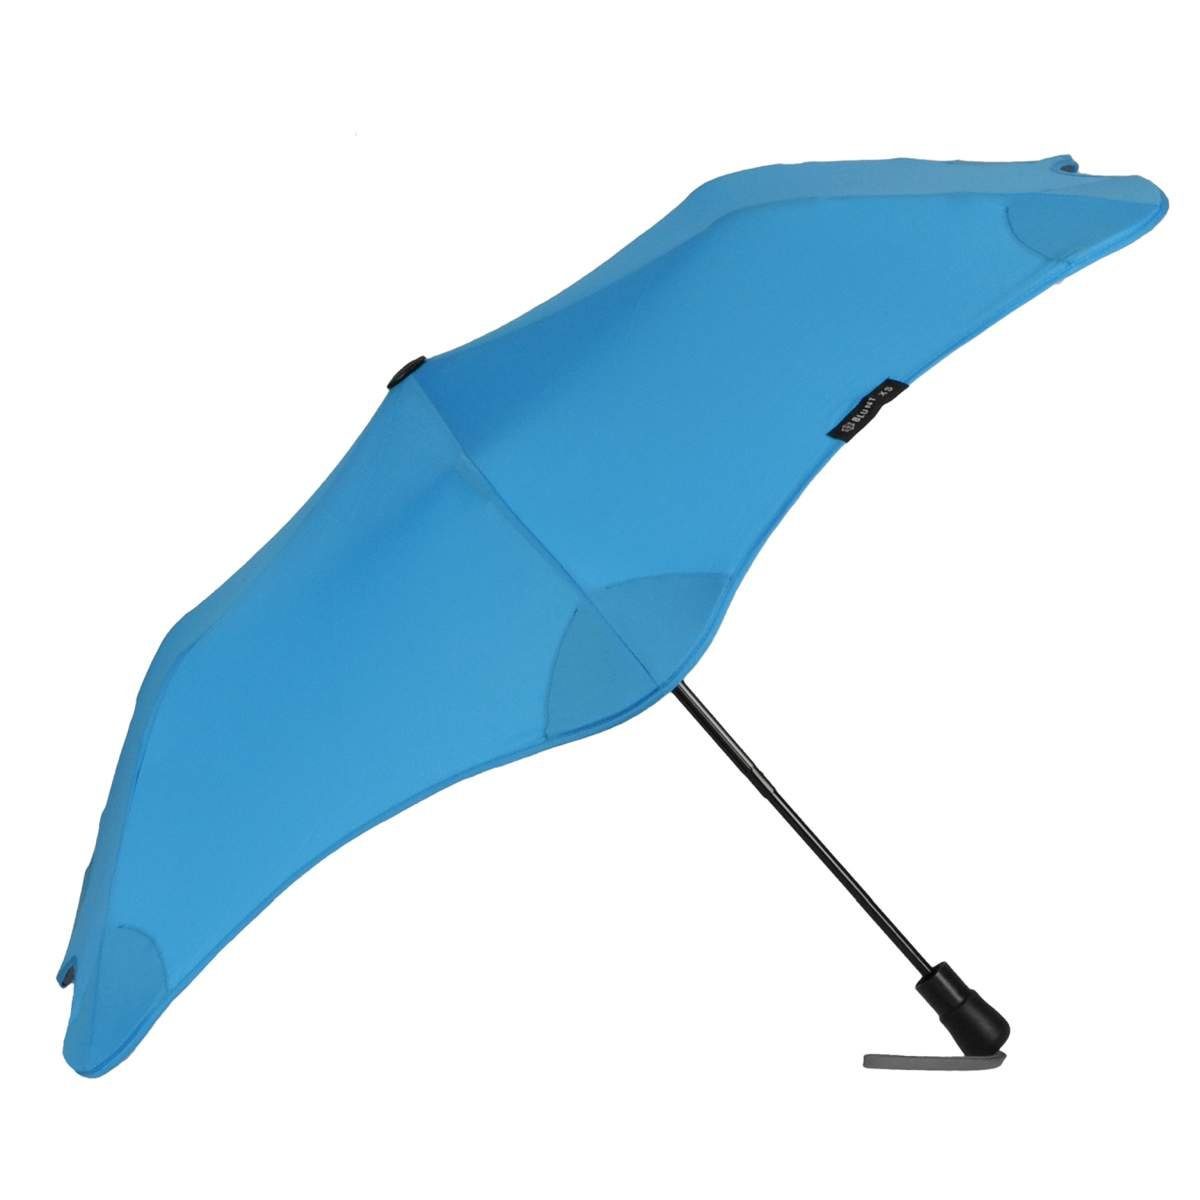 Blunt Taschenregenschirm Metro, Regenschirm, Taschenschirm, für Auto und unterwegs, 96cm Durchmesser blau